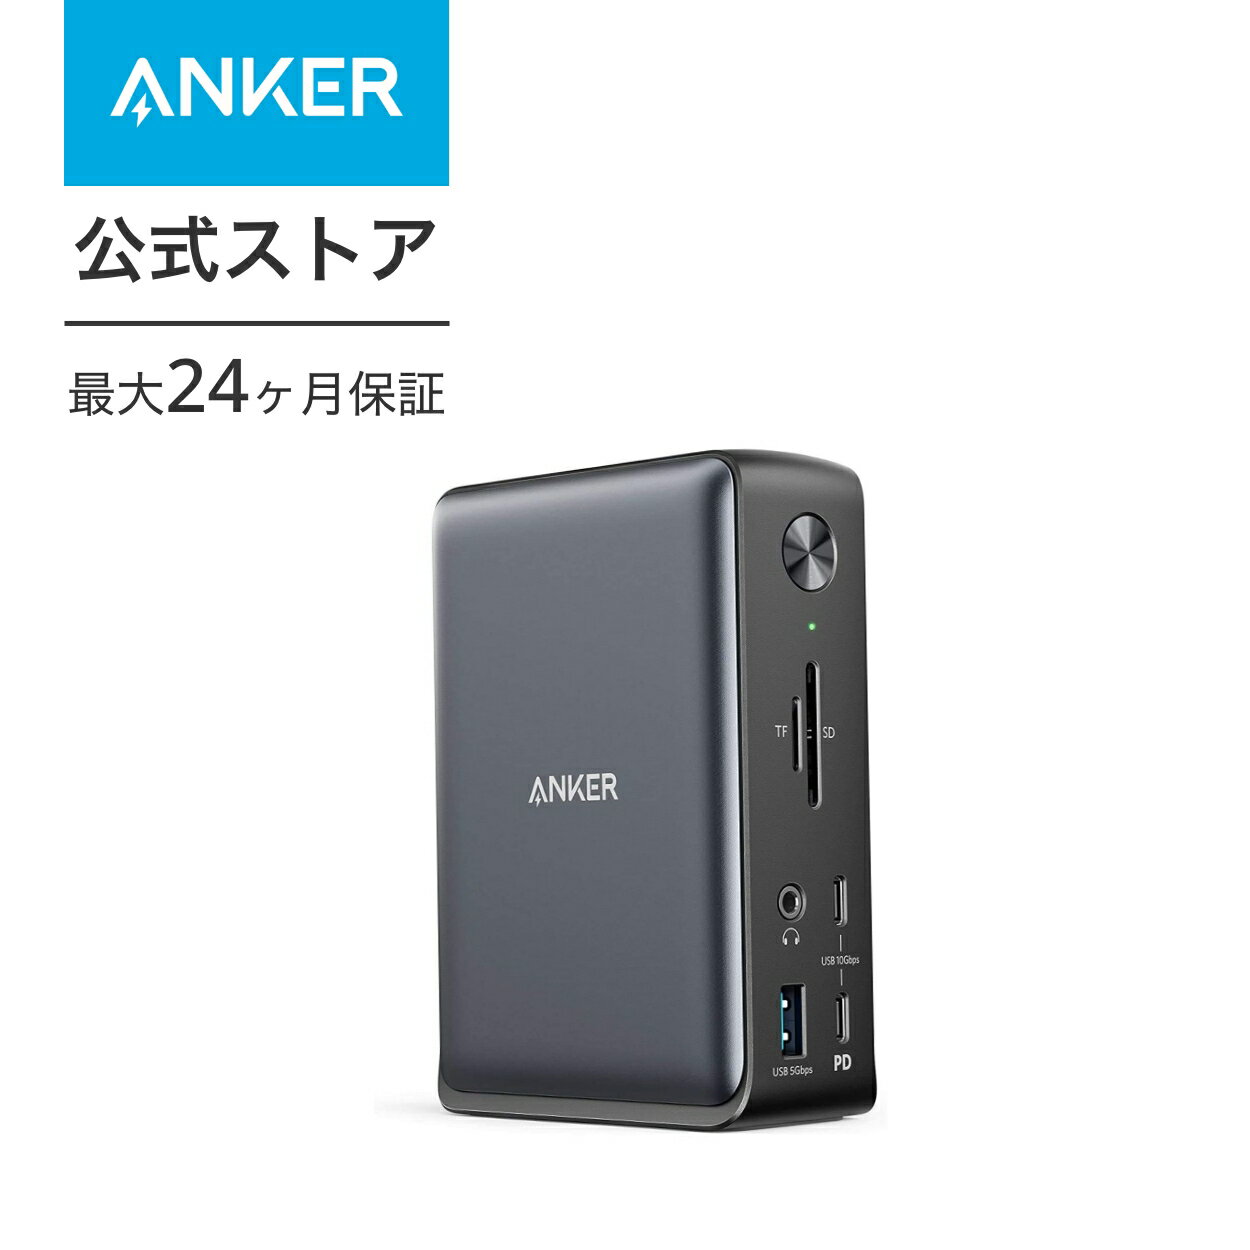 【8,000円OFF 5/16まで】Anker PowerExpand 13-in-1 USB-C Dock ドッキングステーション 85W出力 4K対応 HDMIポート 1Gbps イーサネットポート 3.5mm オーディオジャック USB-Aポート USB-Cポート microSD＆SDカード スロット搭載